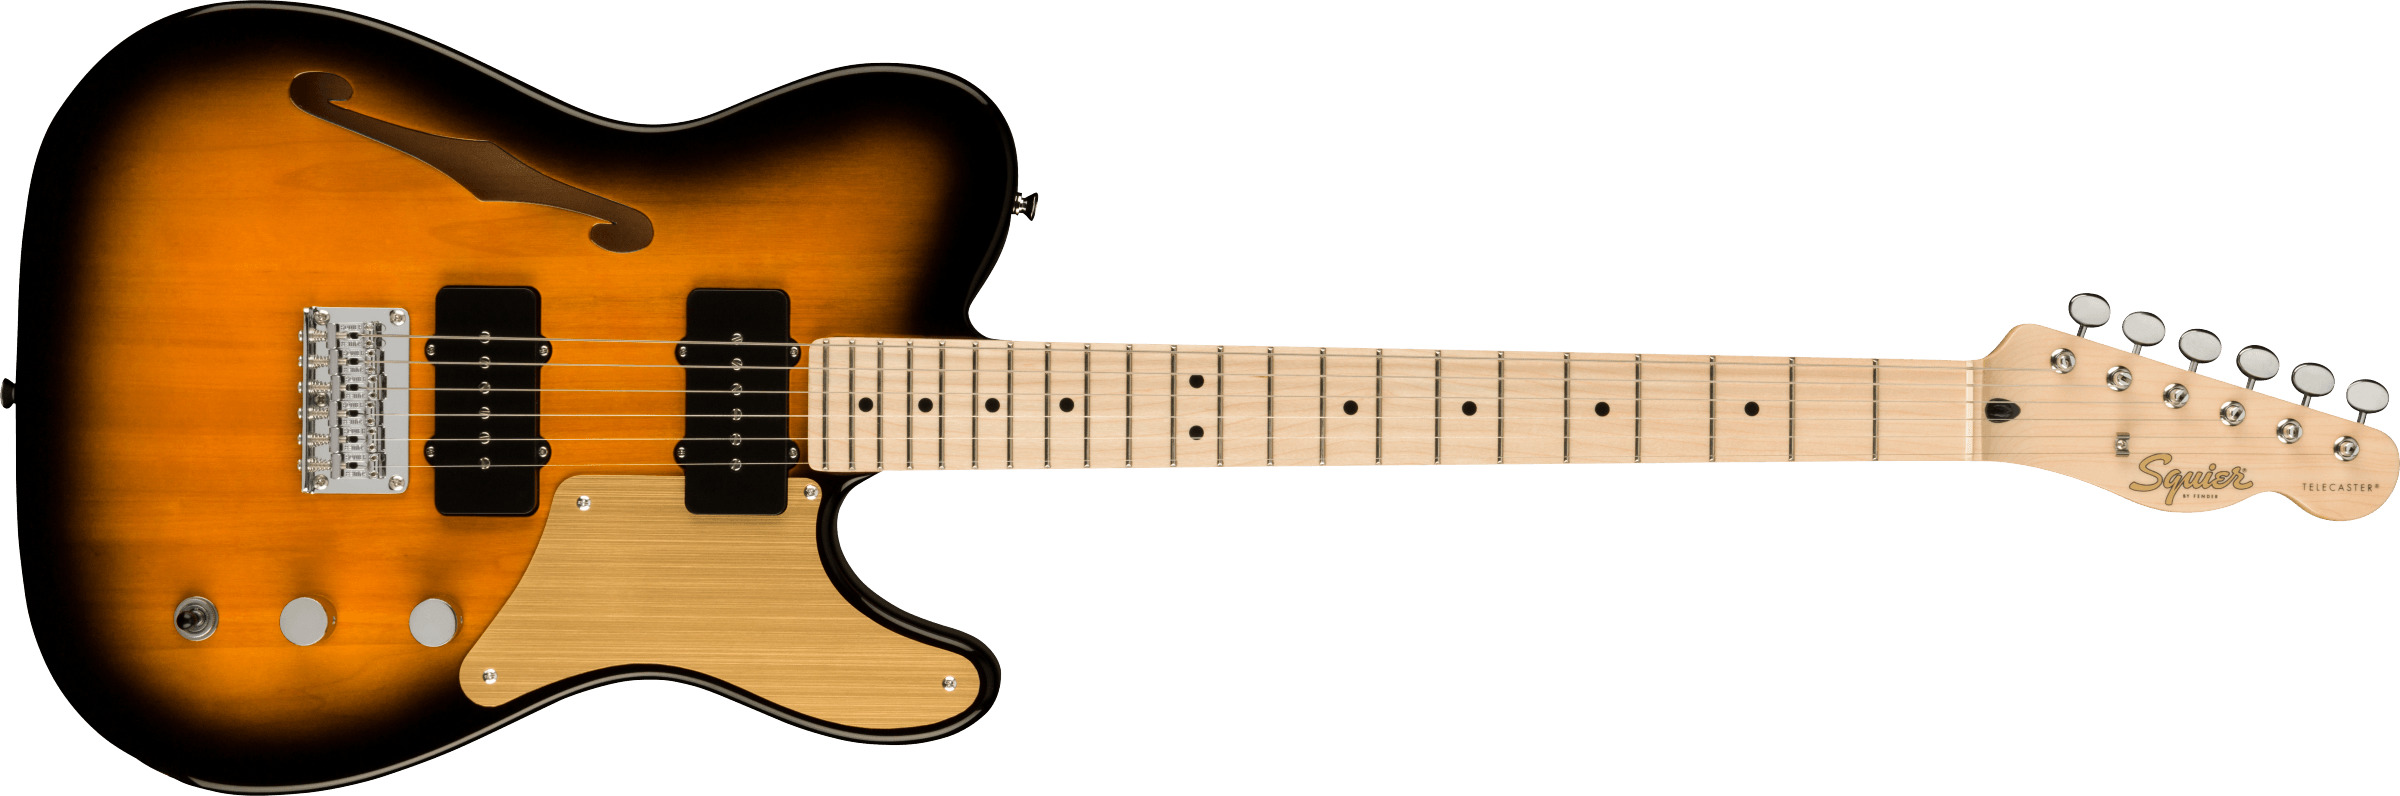 Billede af Fender Squier Paranormal Carbronita Telecaster Thinline El-guitar (Sunburst)